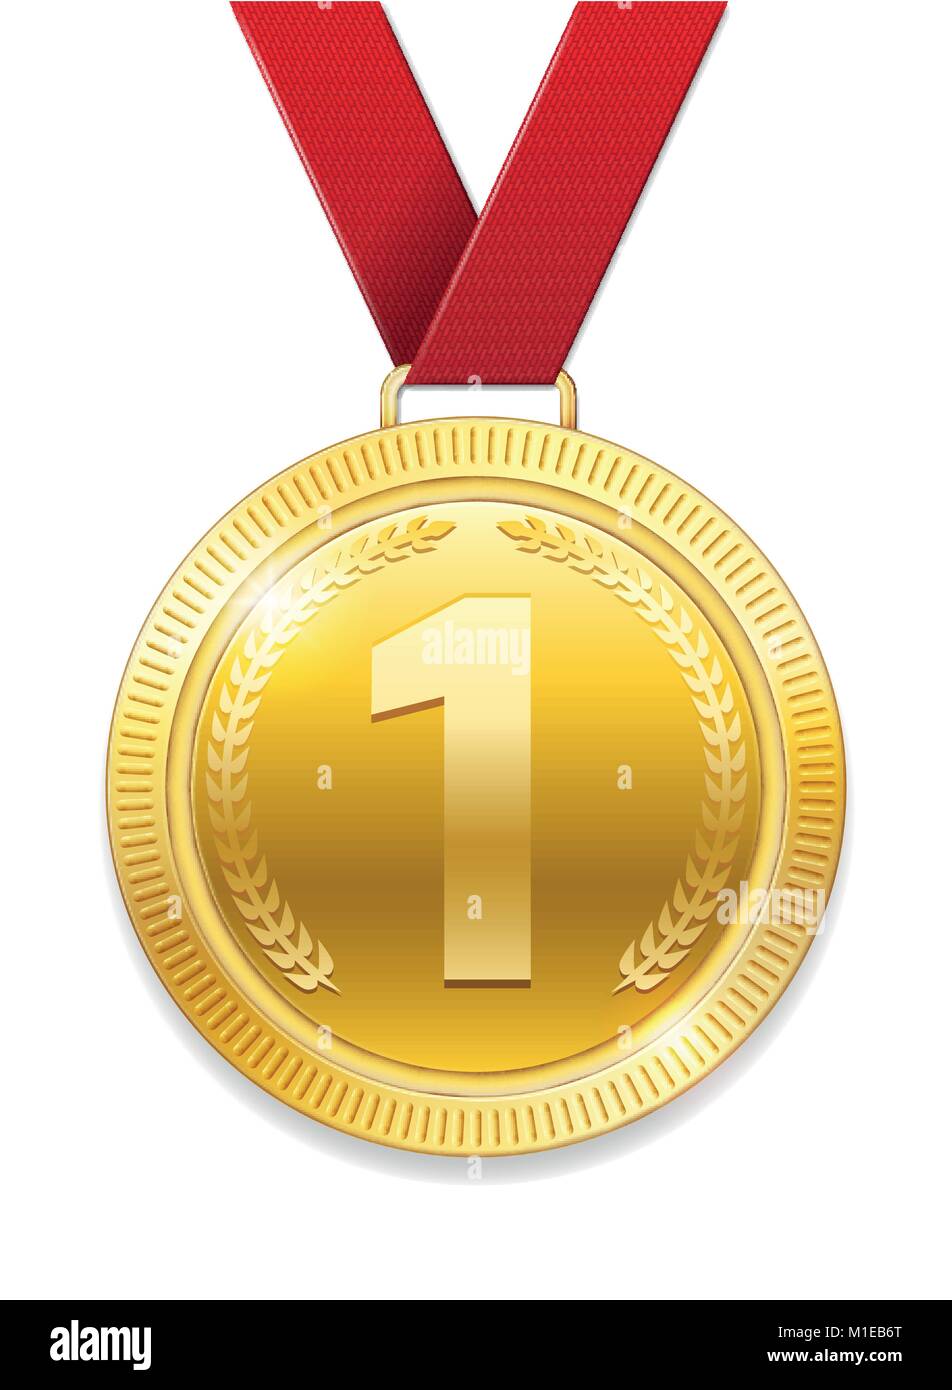 Champion Award Gold Medaille für Sport Preis. Glänzende Medaille mit roter  Schleife auf weißem Hintergrund. Vector Illustration Stock-Vektorgrafik -  Alamy